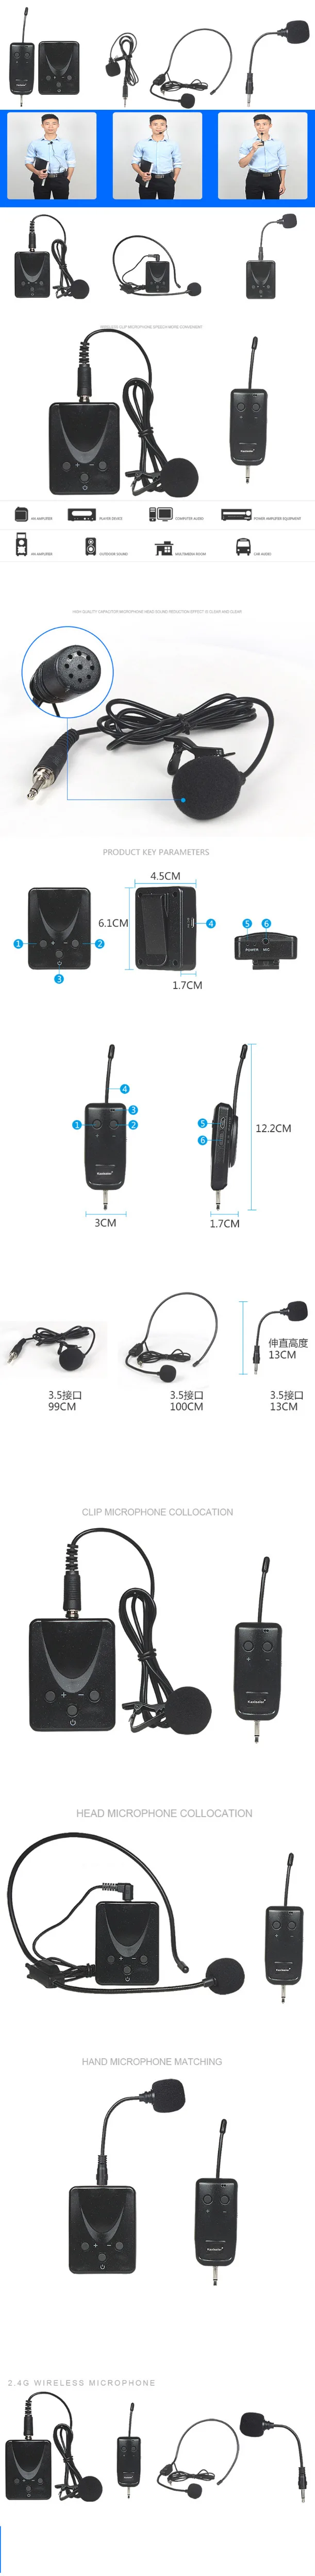 Kaxisaier 2.4 г беспроводной микрофон передатчик приемник Lavalier/гарнитура/ручной микрофон